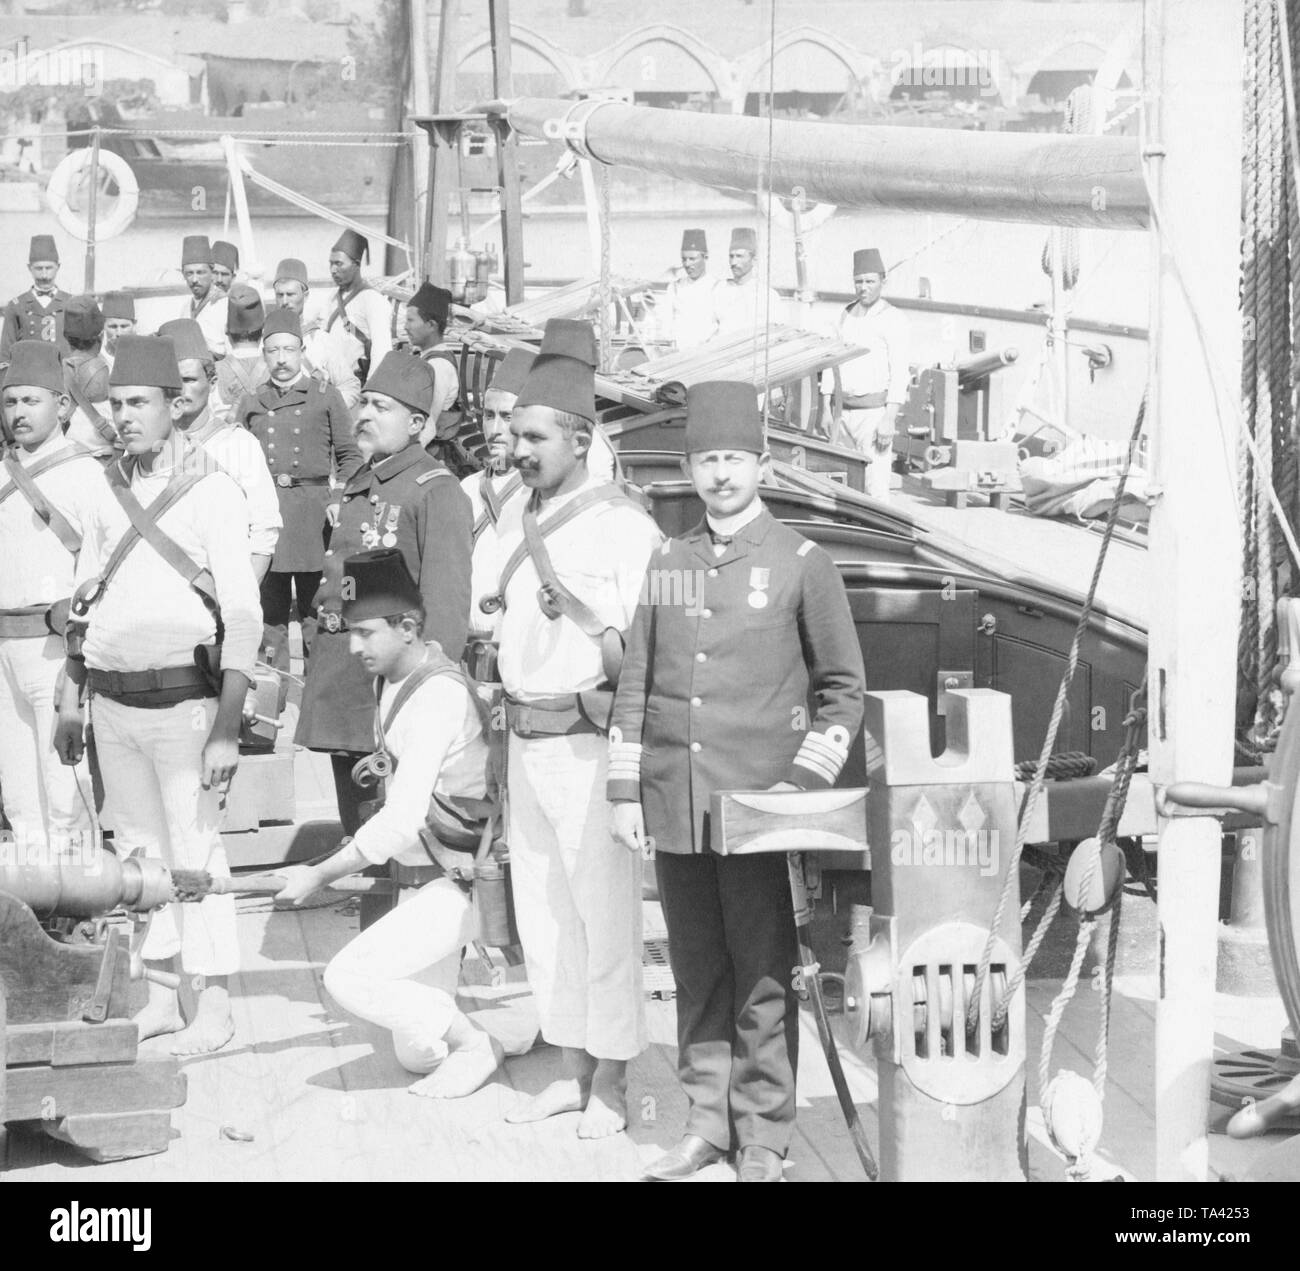 Les marins à bord de leur navire au cours d'exercices, dont deux officiers. Photo non datée, sans emplacement. Banque D'Images